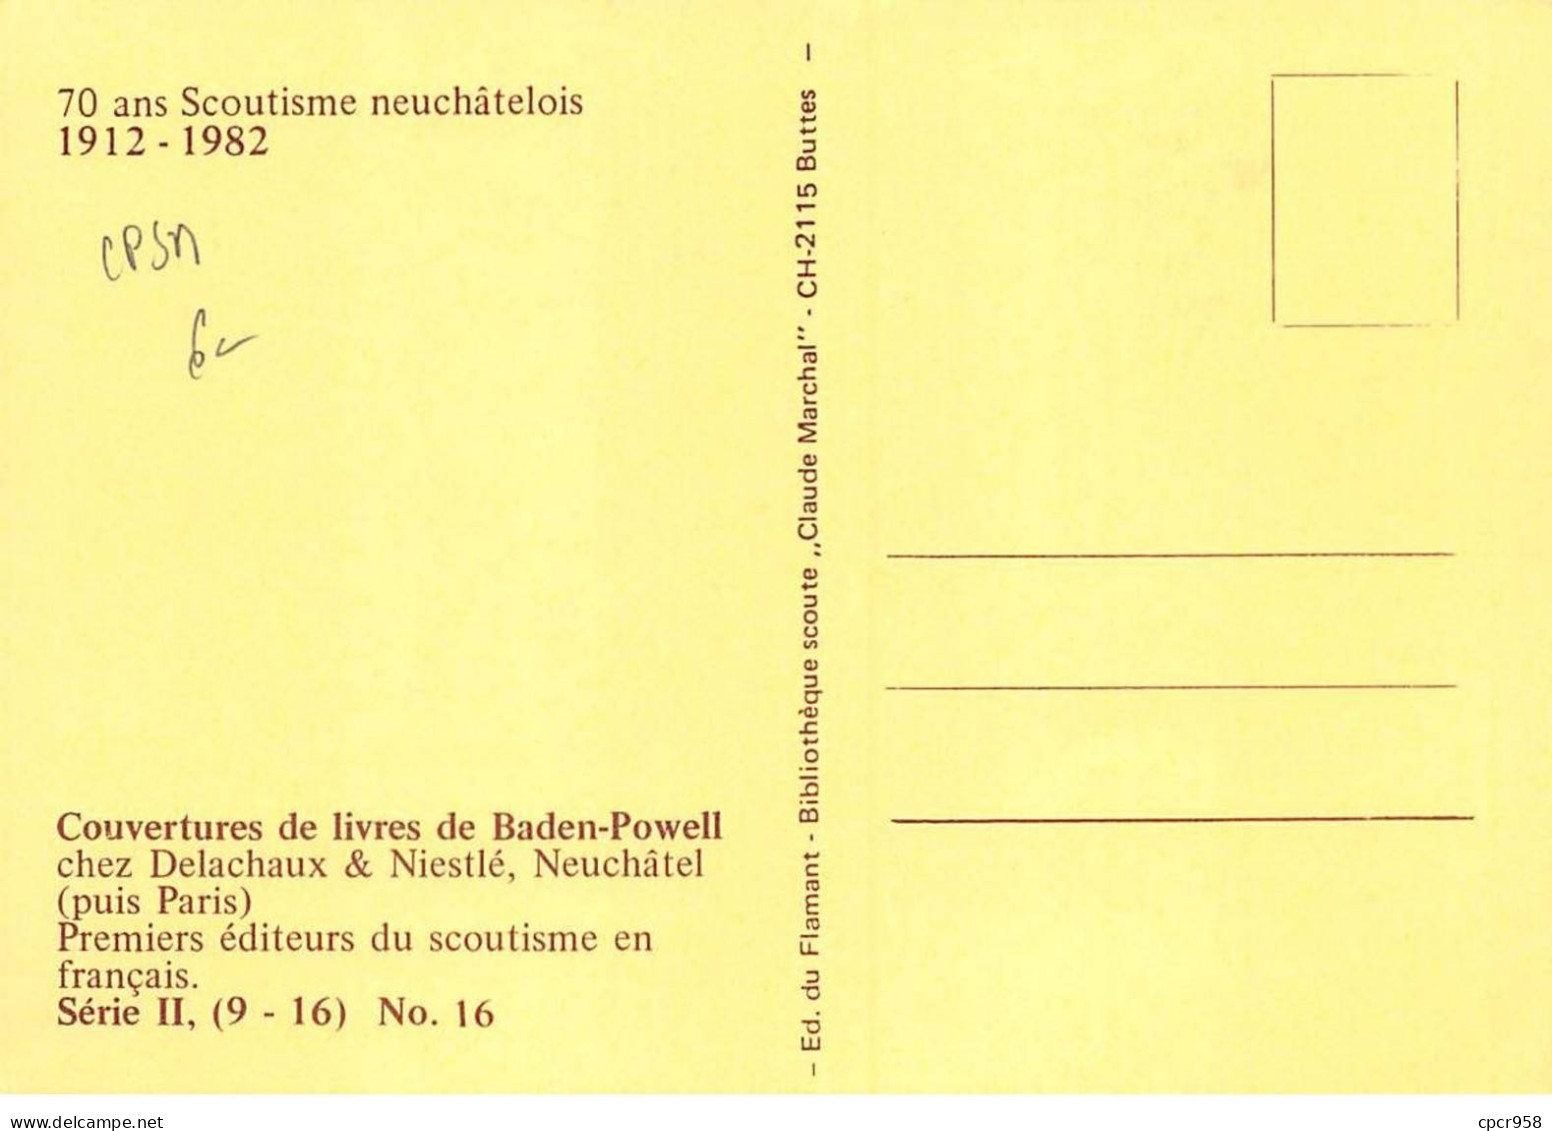 SCOUTISME - SAN36095 - 70 Ans Scoutisme Neuchâtelois - Couvertures Livres Baden- Série II, (9-16), N°16  - CPSM 15x10 Cm - Scoutisme